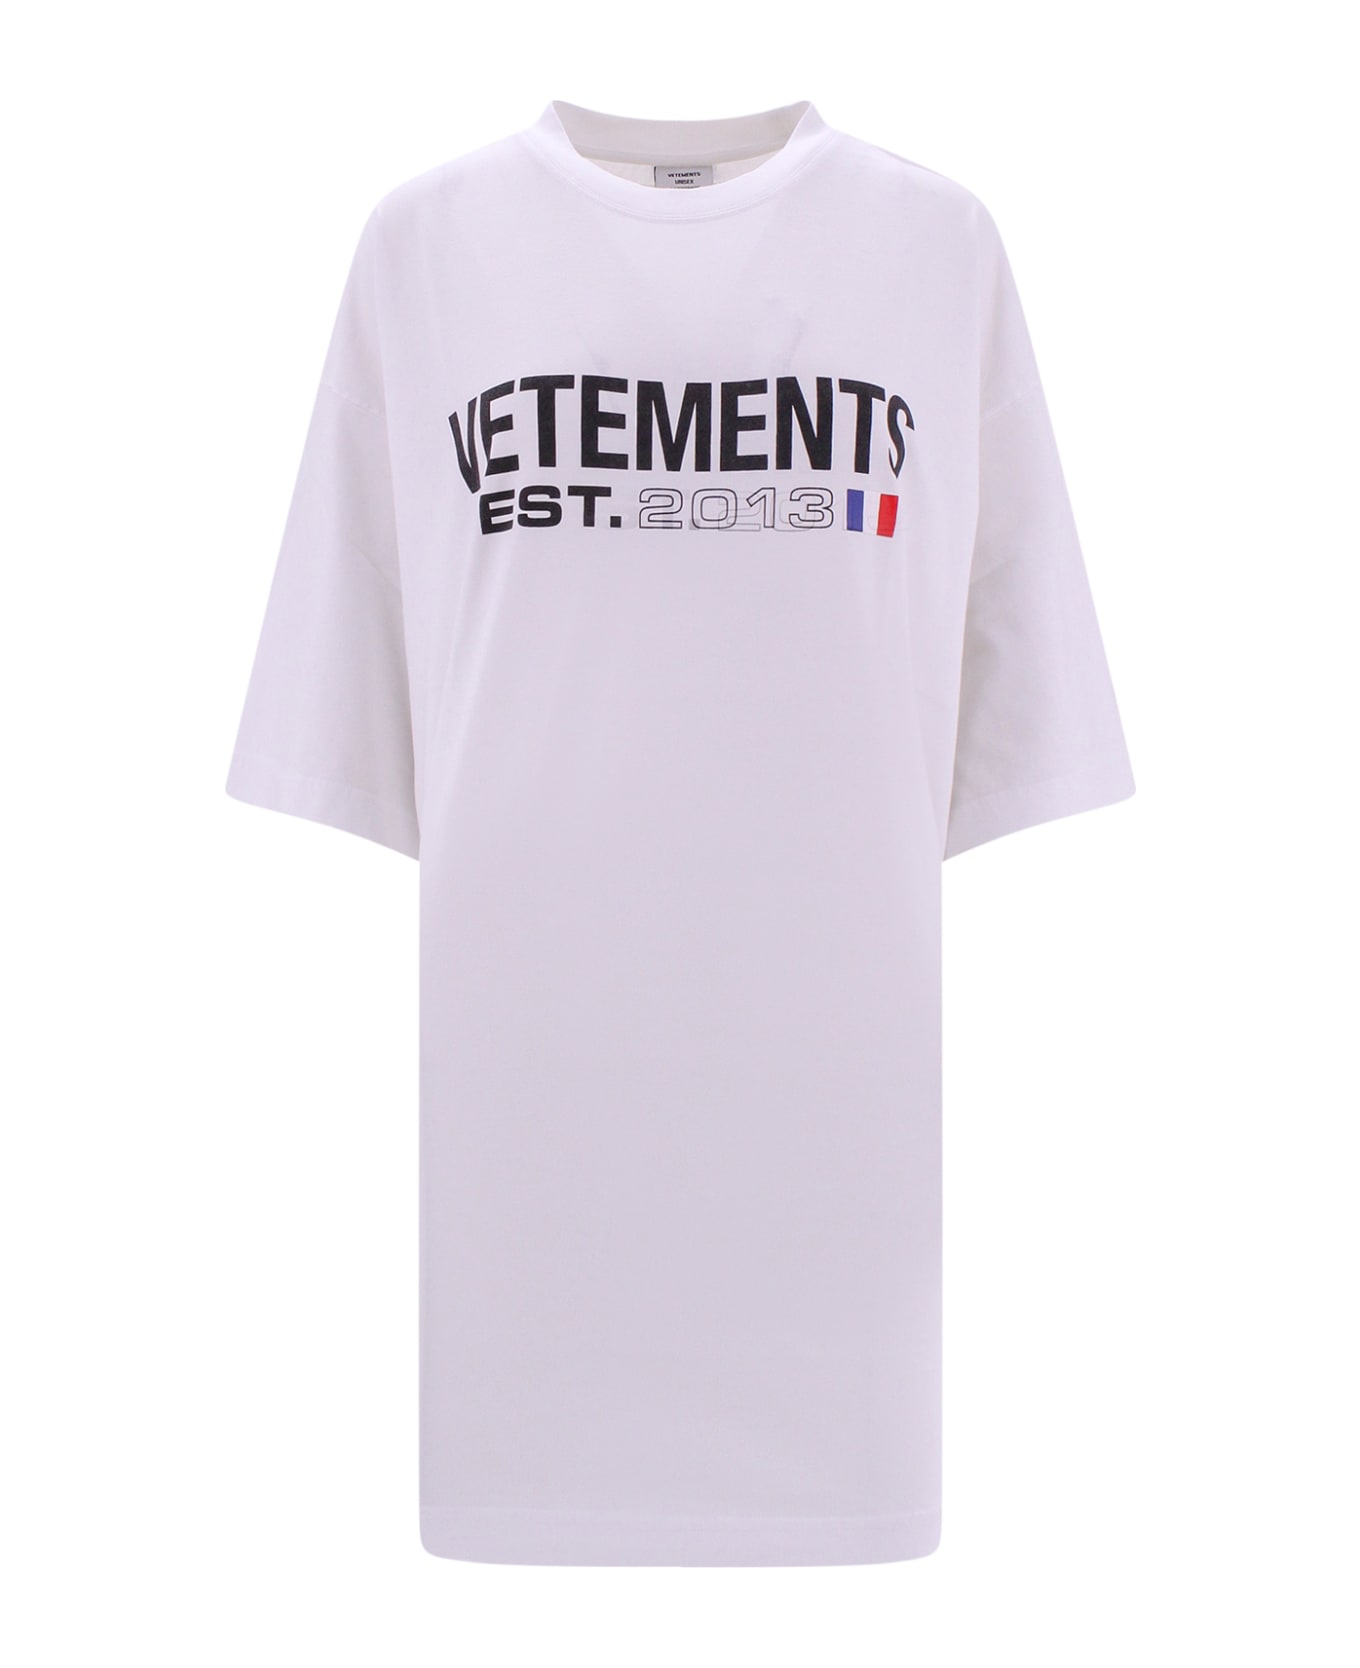 VETEMENTS T-shirt - Bianco